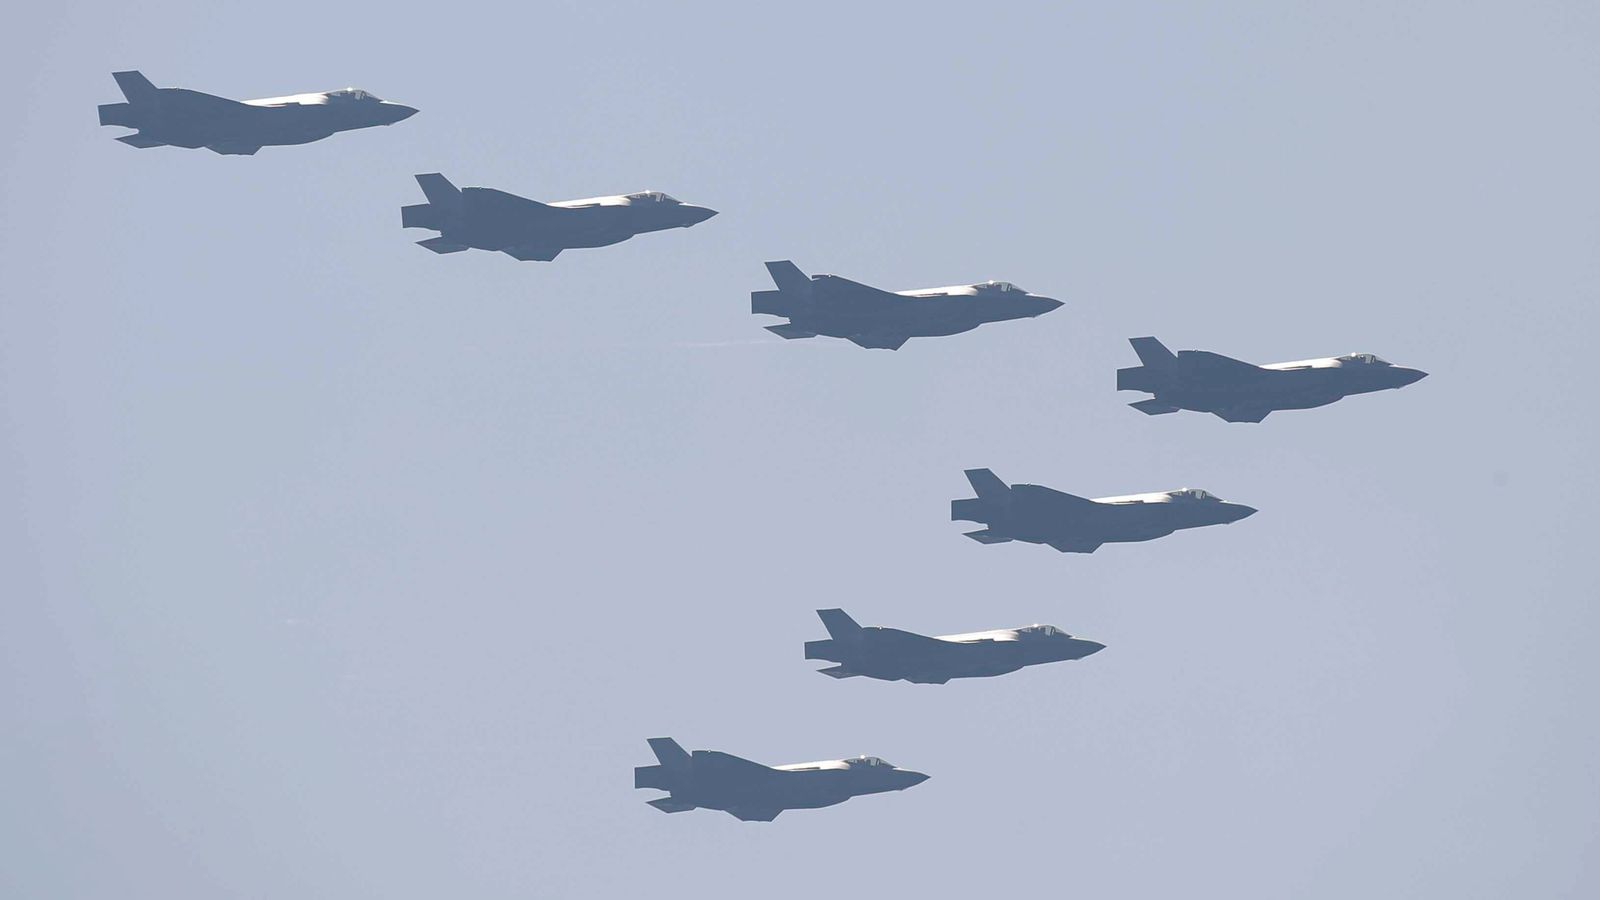 Hàn Quốc đã điều các máy bay chiến đấu để đối phó UAV nghi của Triều Tiên. Ảnh minh họa: Sky News